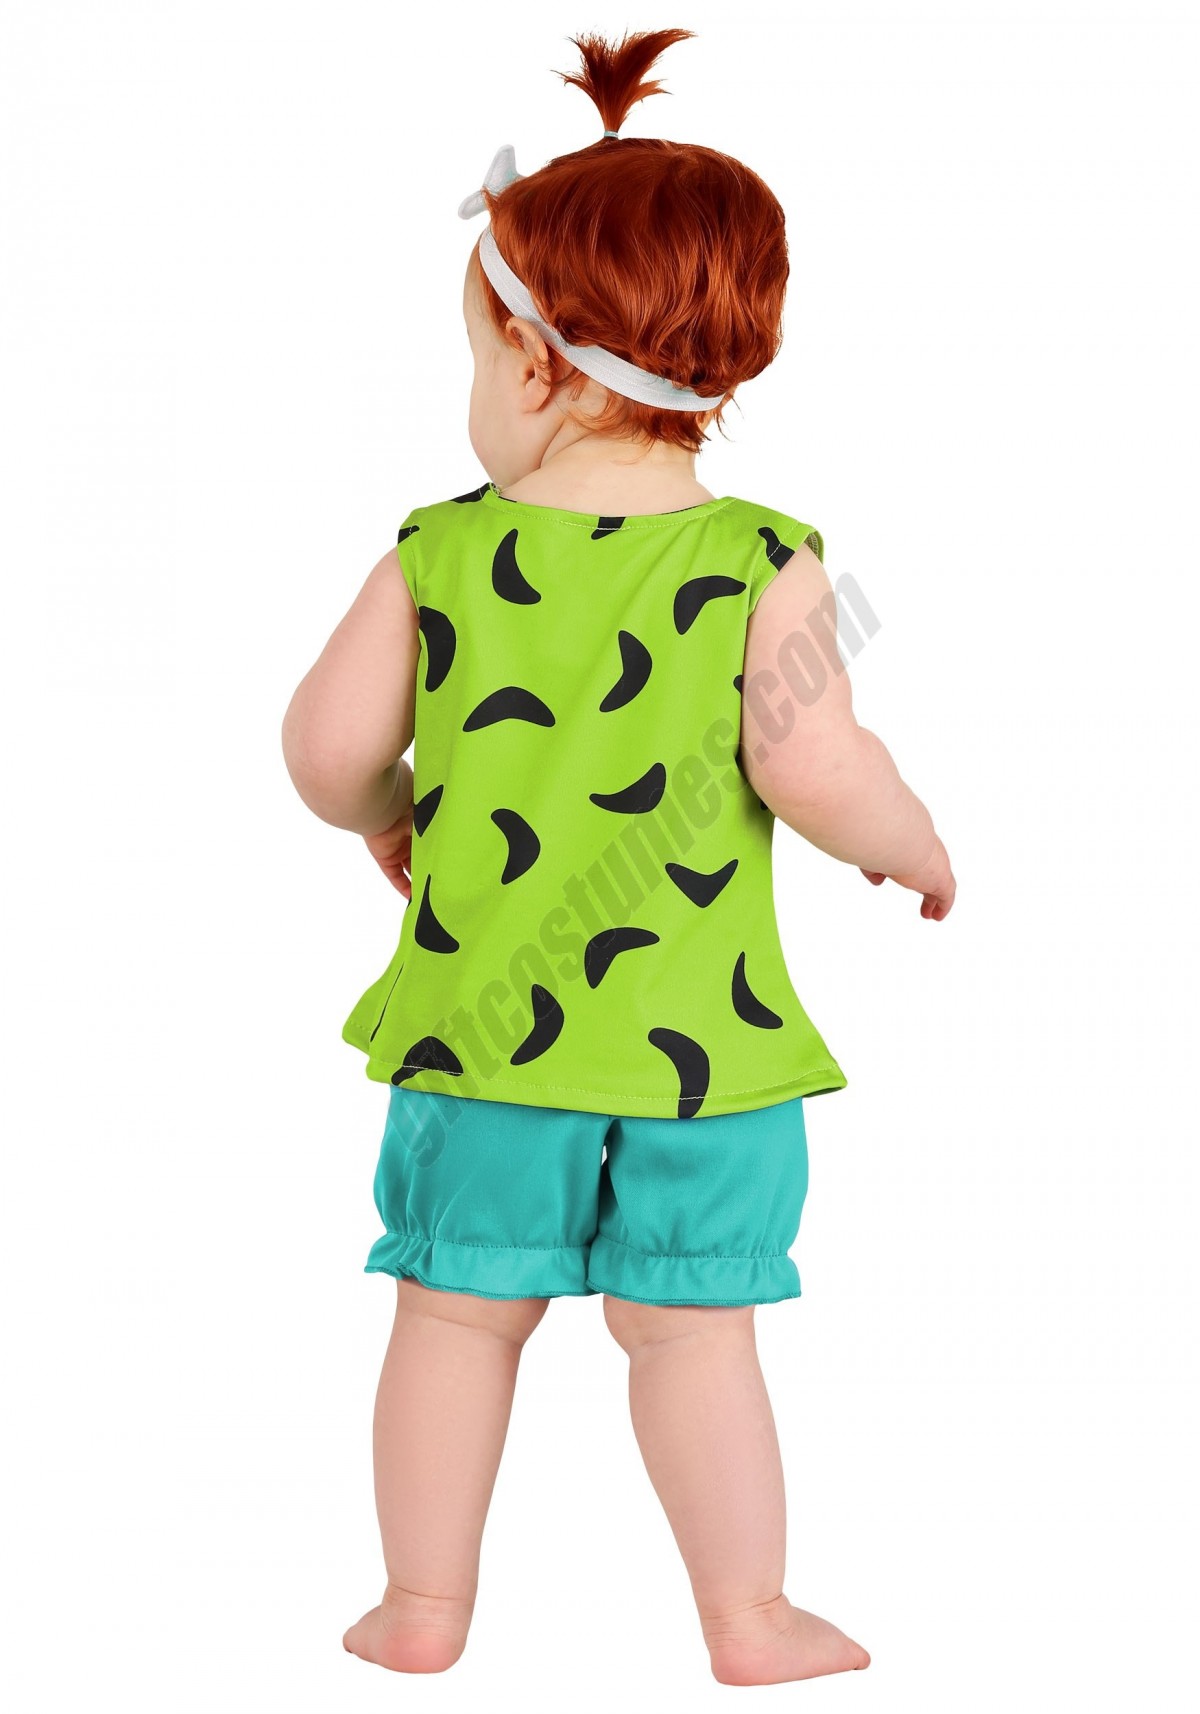 Classic Flintstones Pebbles Infant Costume Promotions - -2